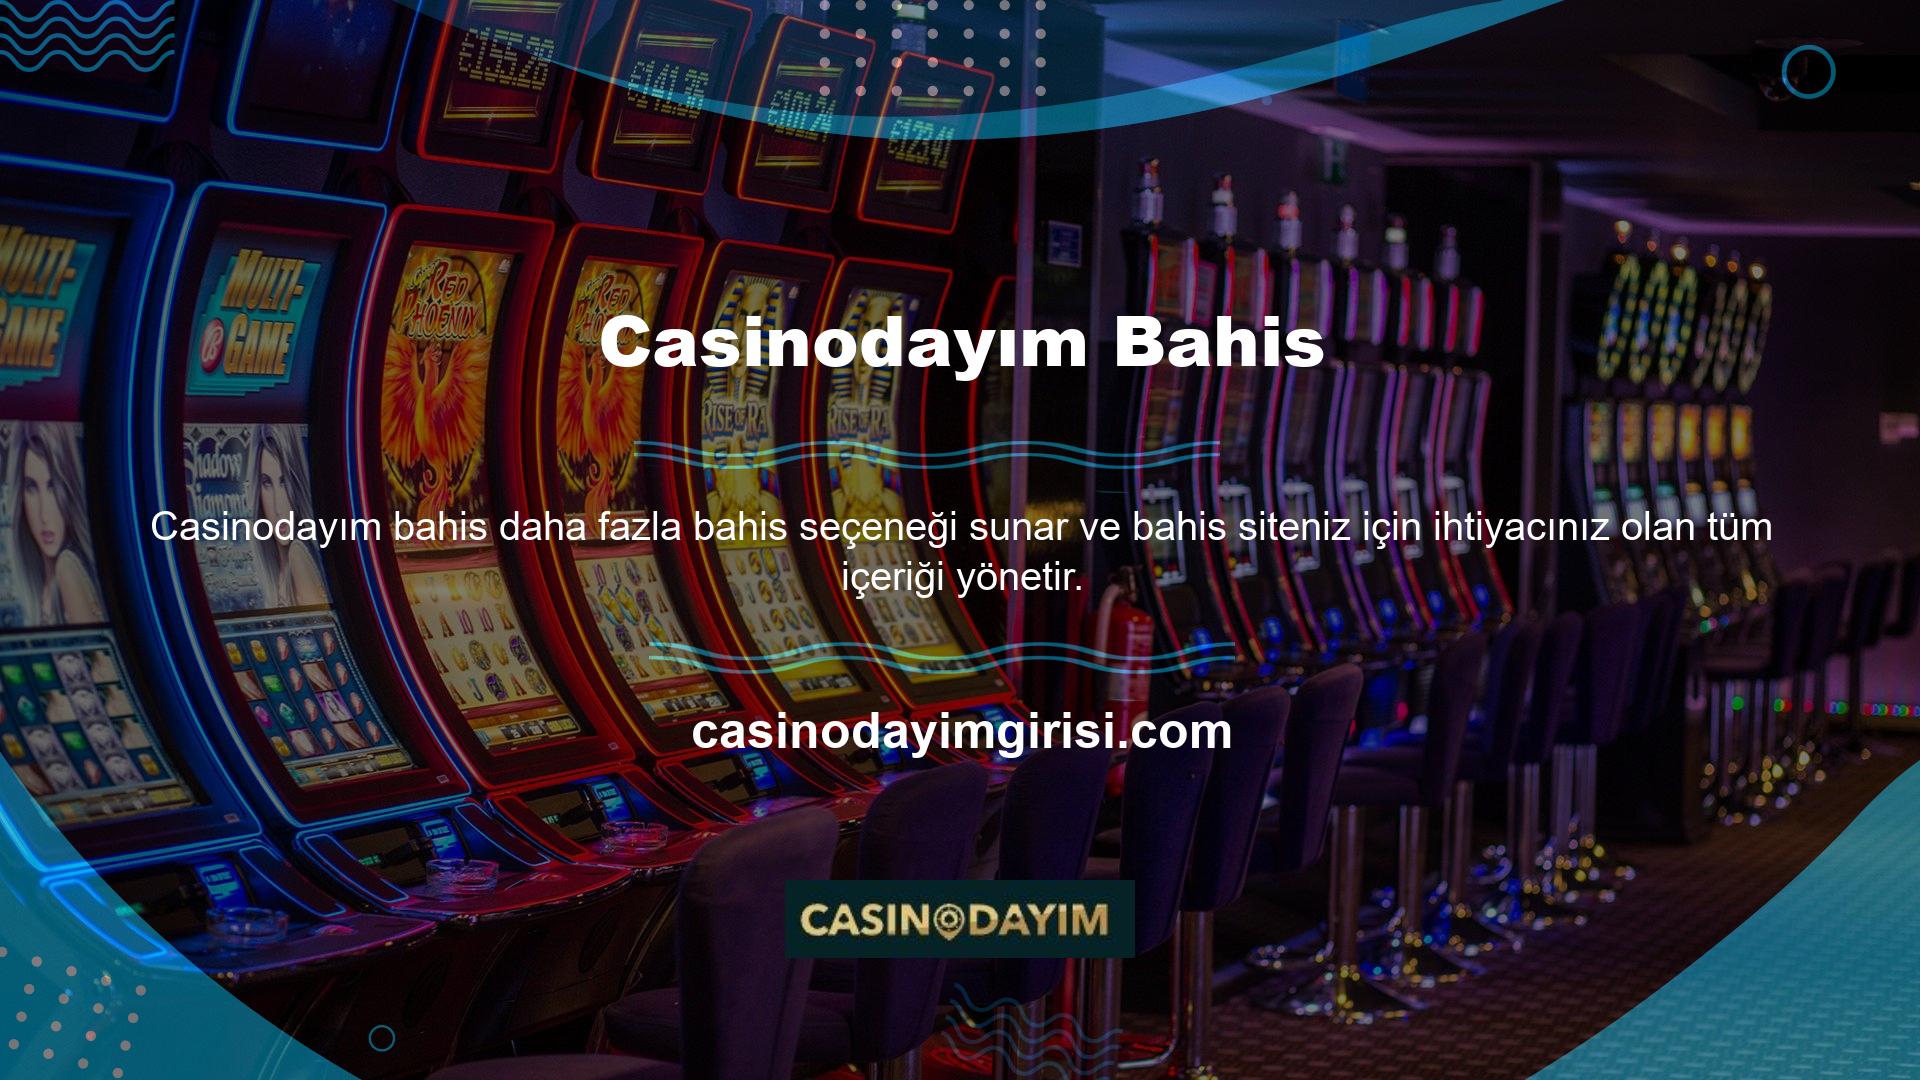 Casinodayım girişleri web sitemizde barındırılır ve görüntülenir